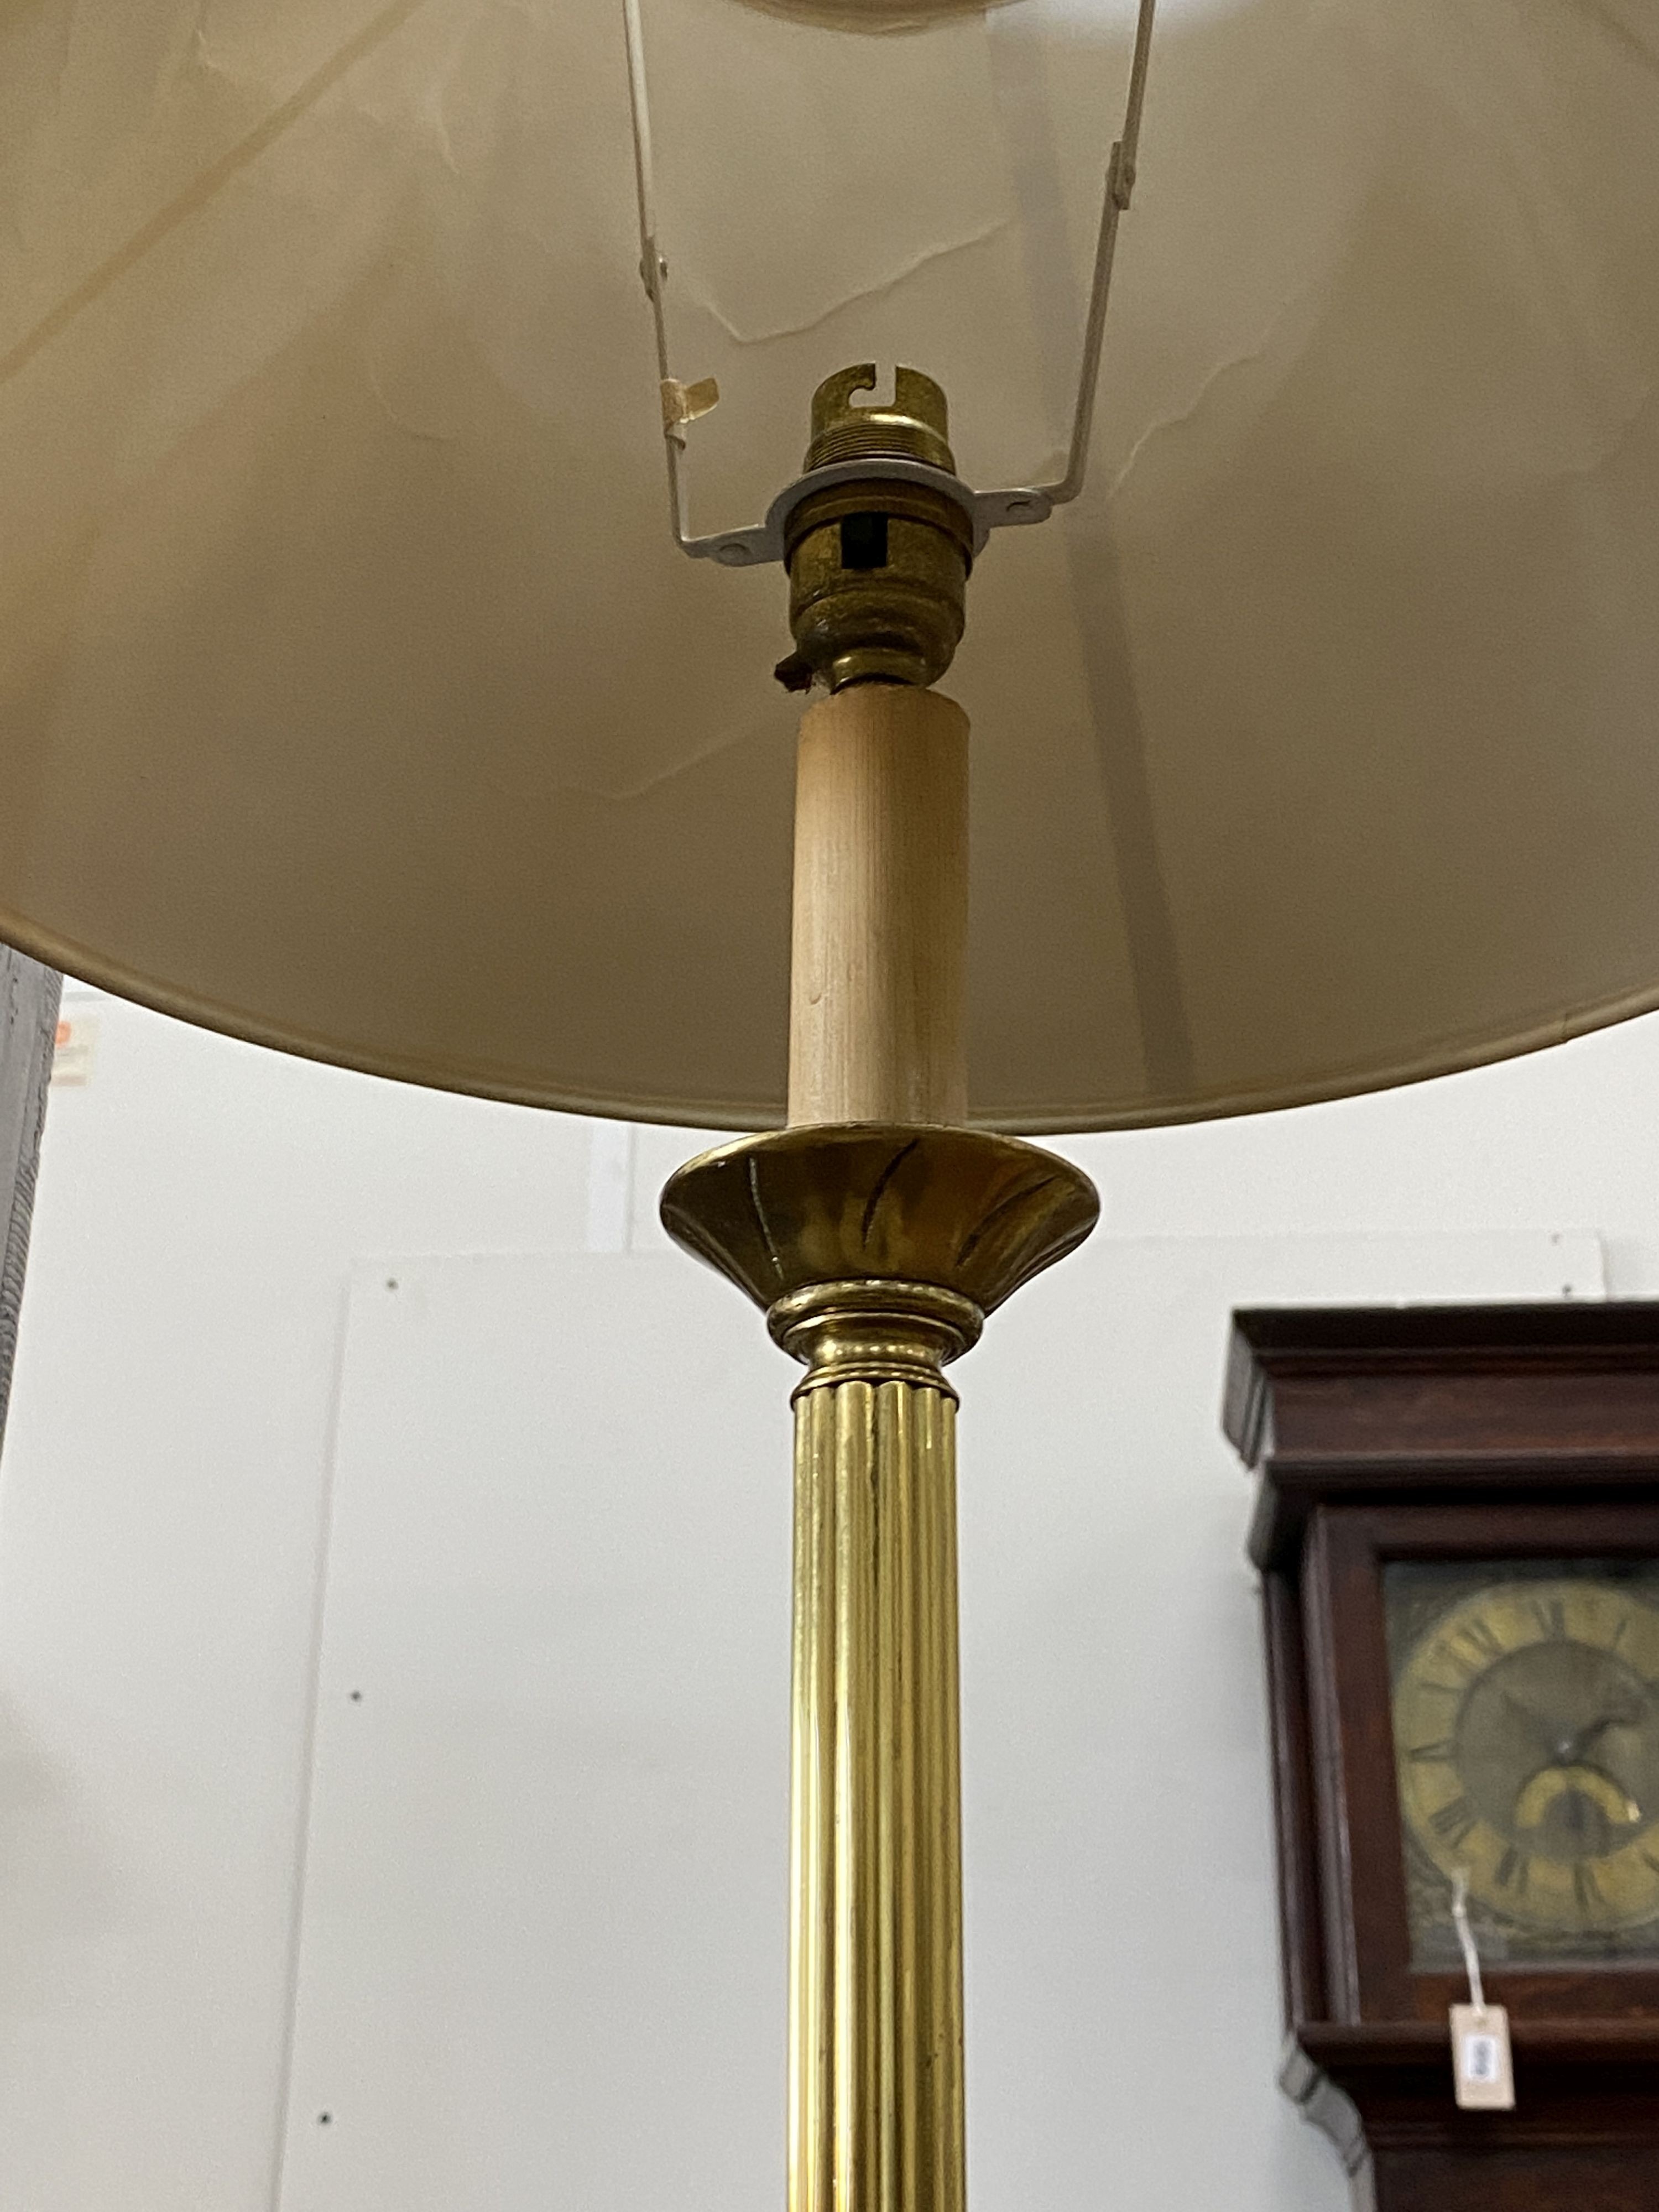 A brass lamp standard, height 150cm